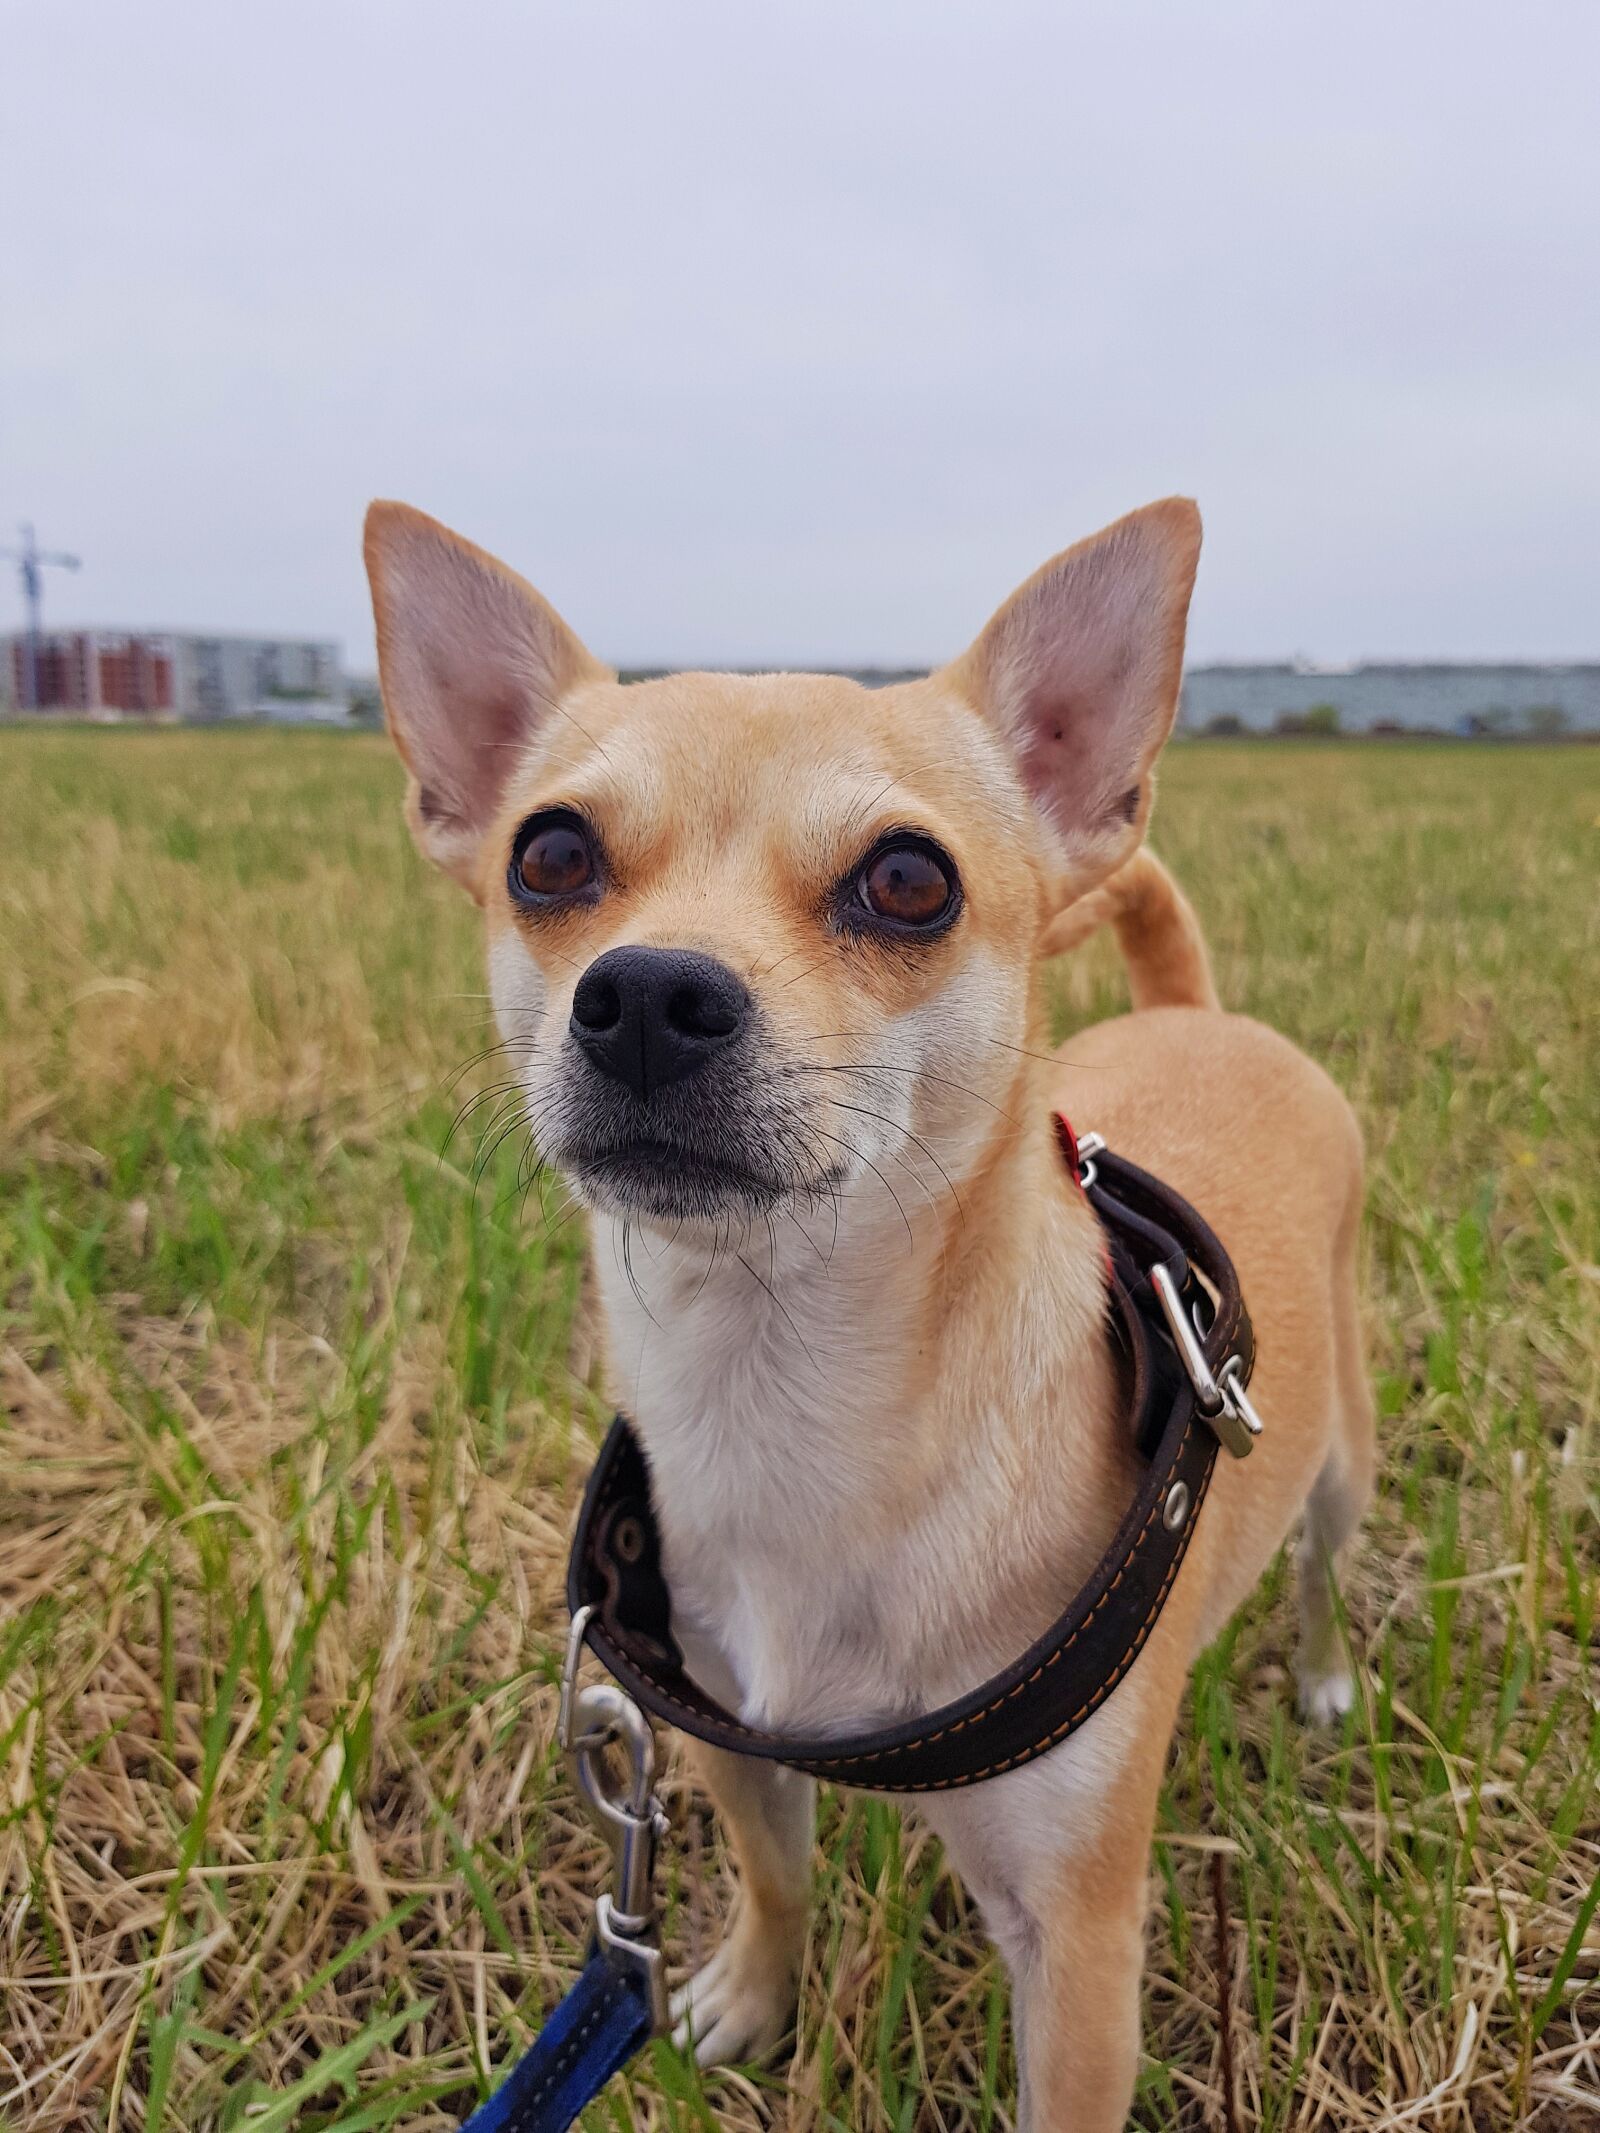 Samsung Galaxy S8+ sample photo. Dog, chihuahua, darling photography